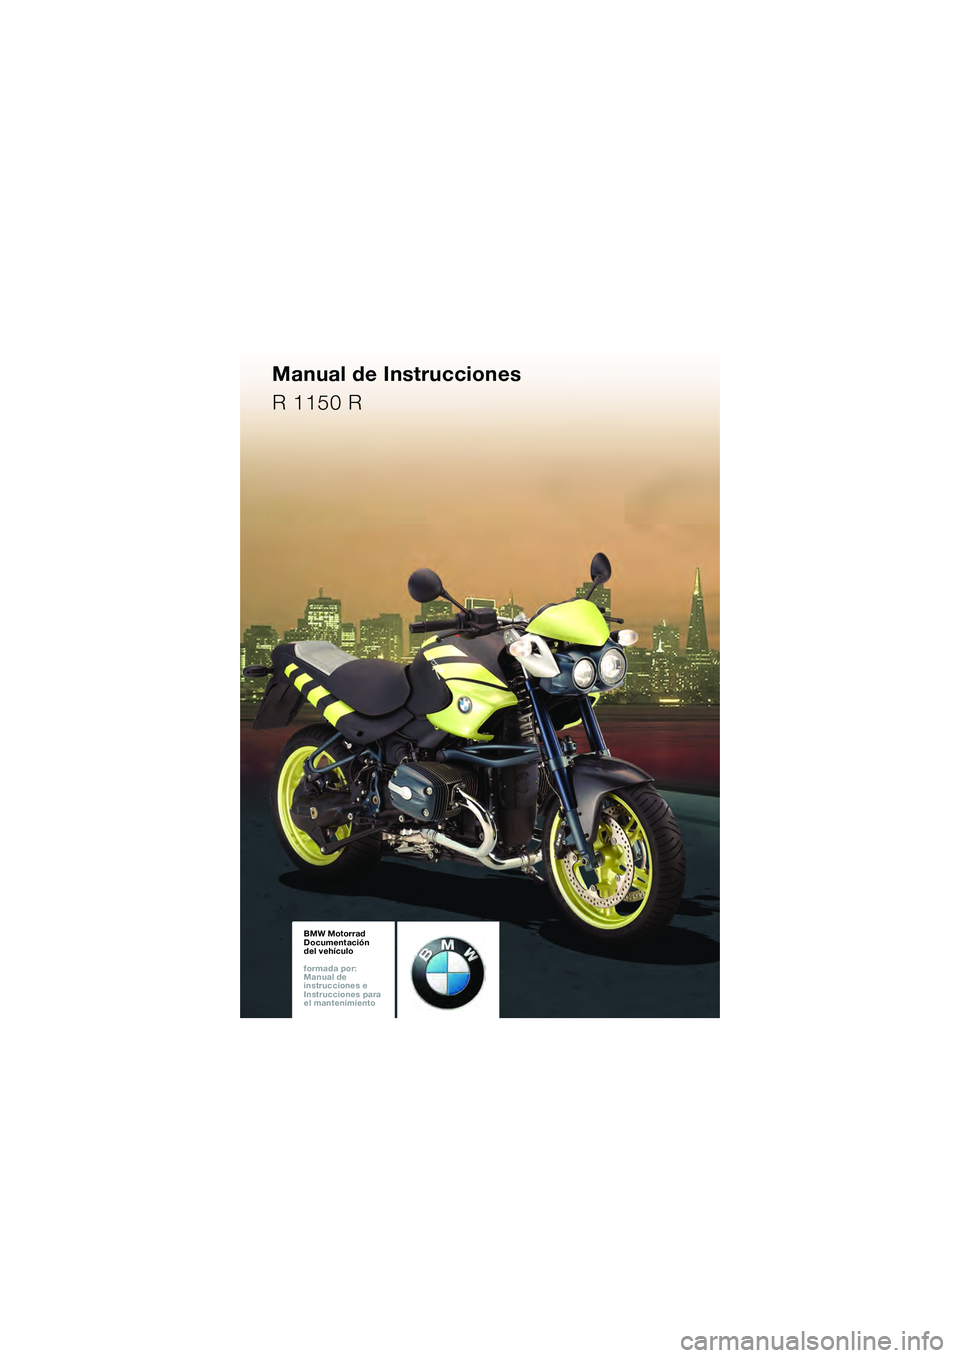 BMW MOTORRAD R 1150 R 2002  Manual de instrucciones (in Spanish) BMW Motorrad
Documentación 
del vehículo
formada por: 
Manual de 
instrucciones e 
Instrucciones para 
el mantenimiento
Manual de Instrucciones
R 1150 R
10r28FUNbke1.book  Seite 87  Donnerstag, 26. 